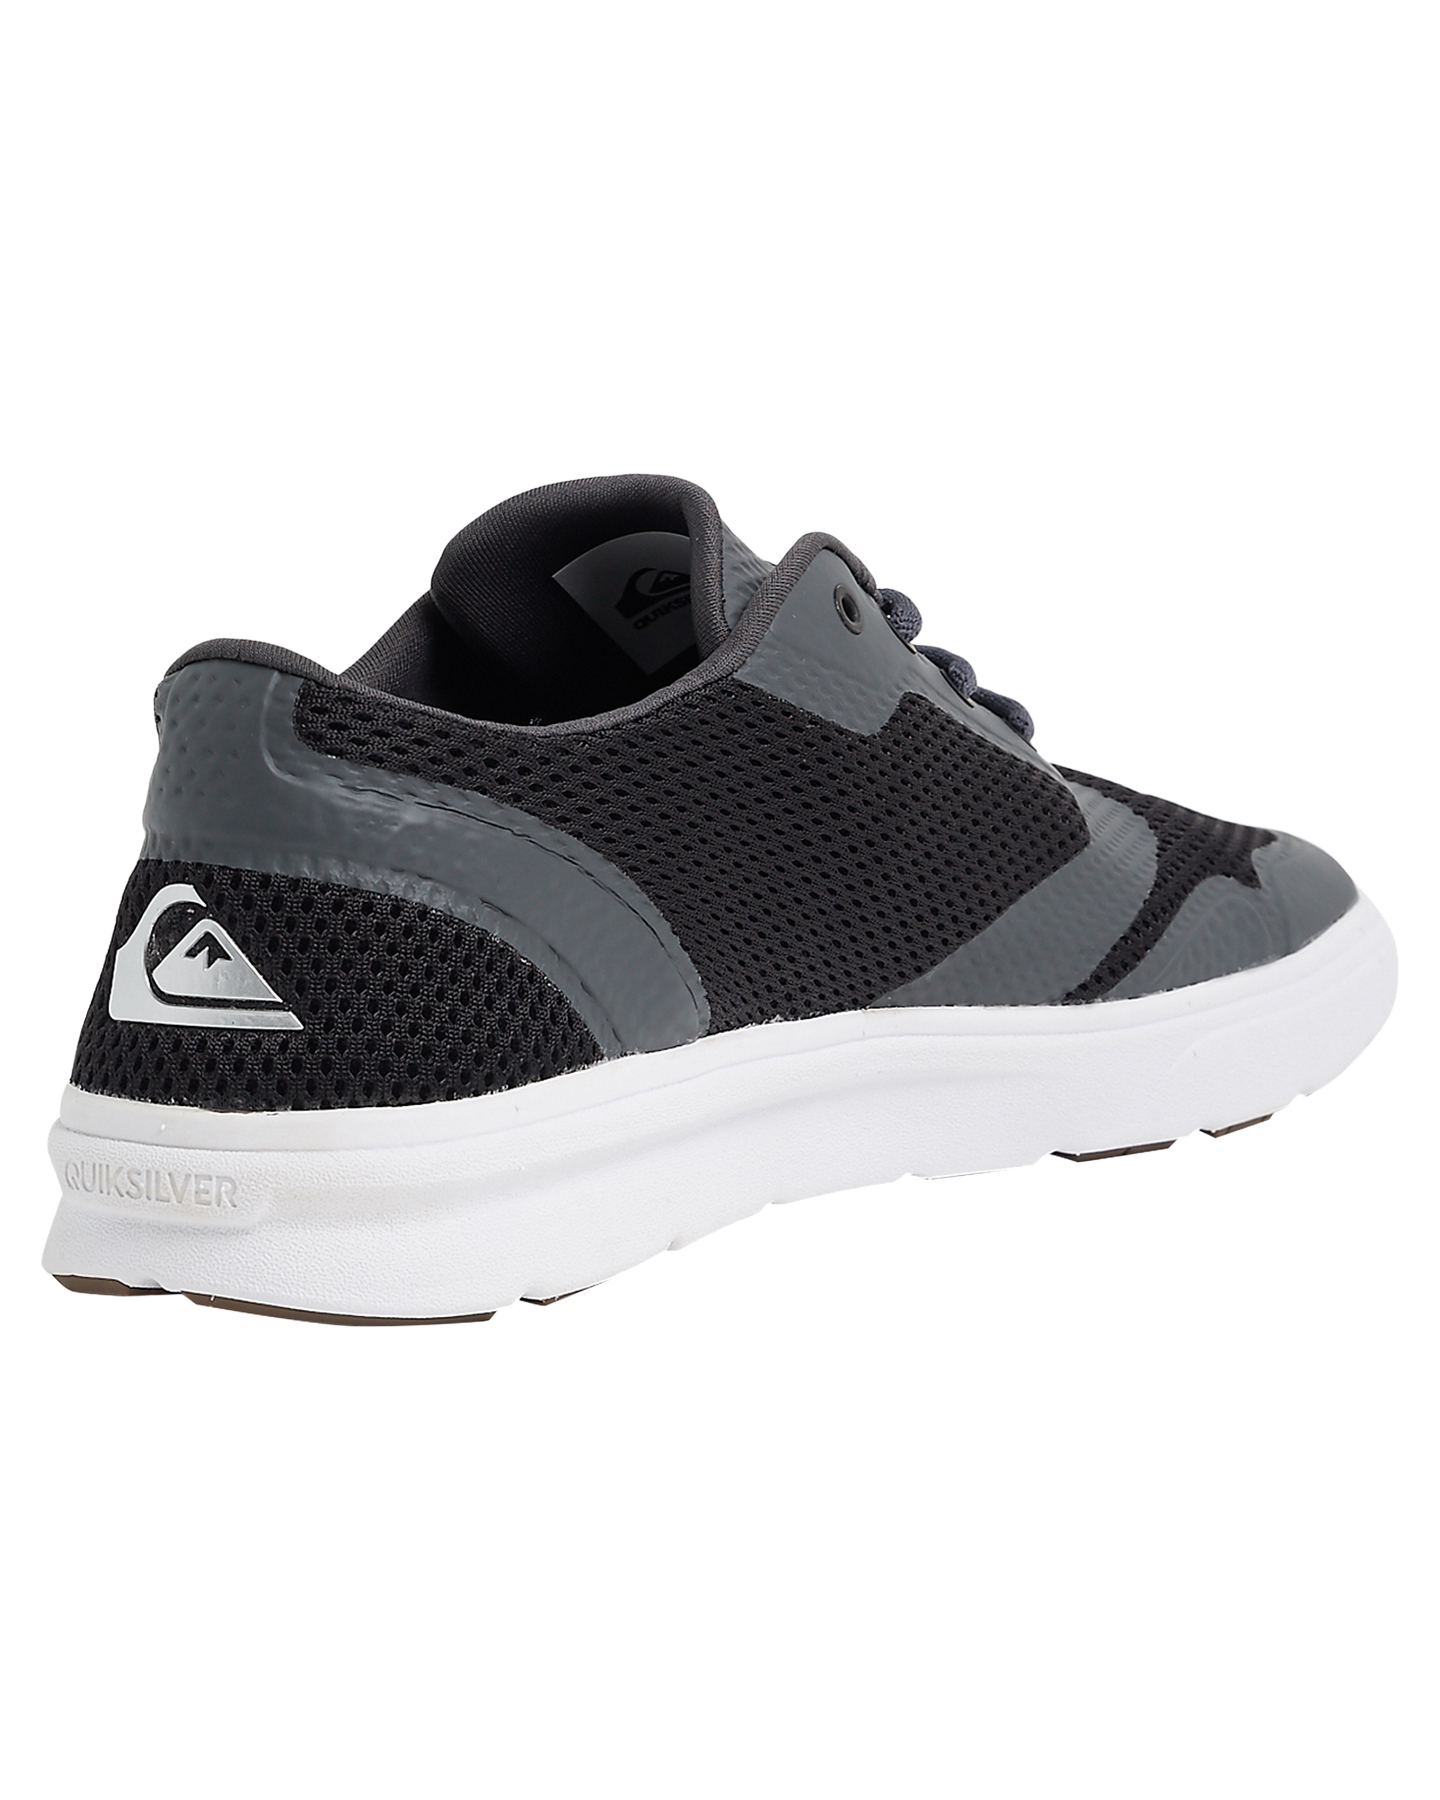 Quiksilver Mens Amphibian Plus Shoe - Black/Grey/White | SurfStitch